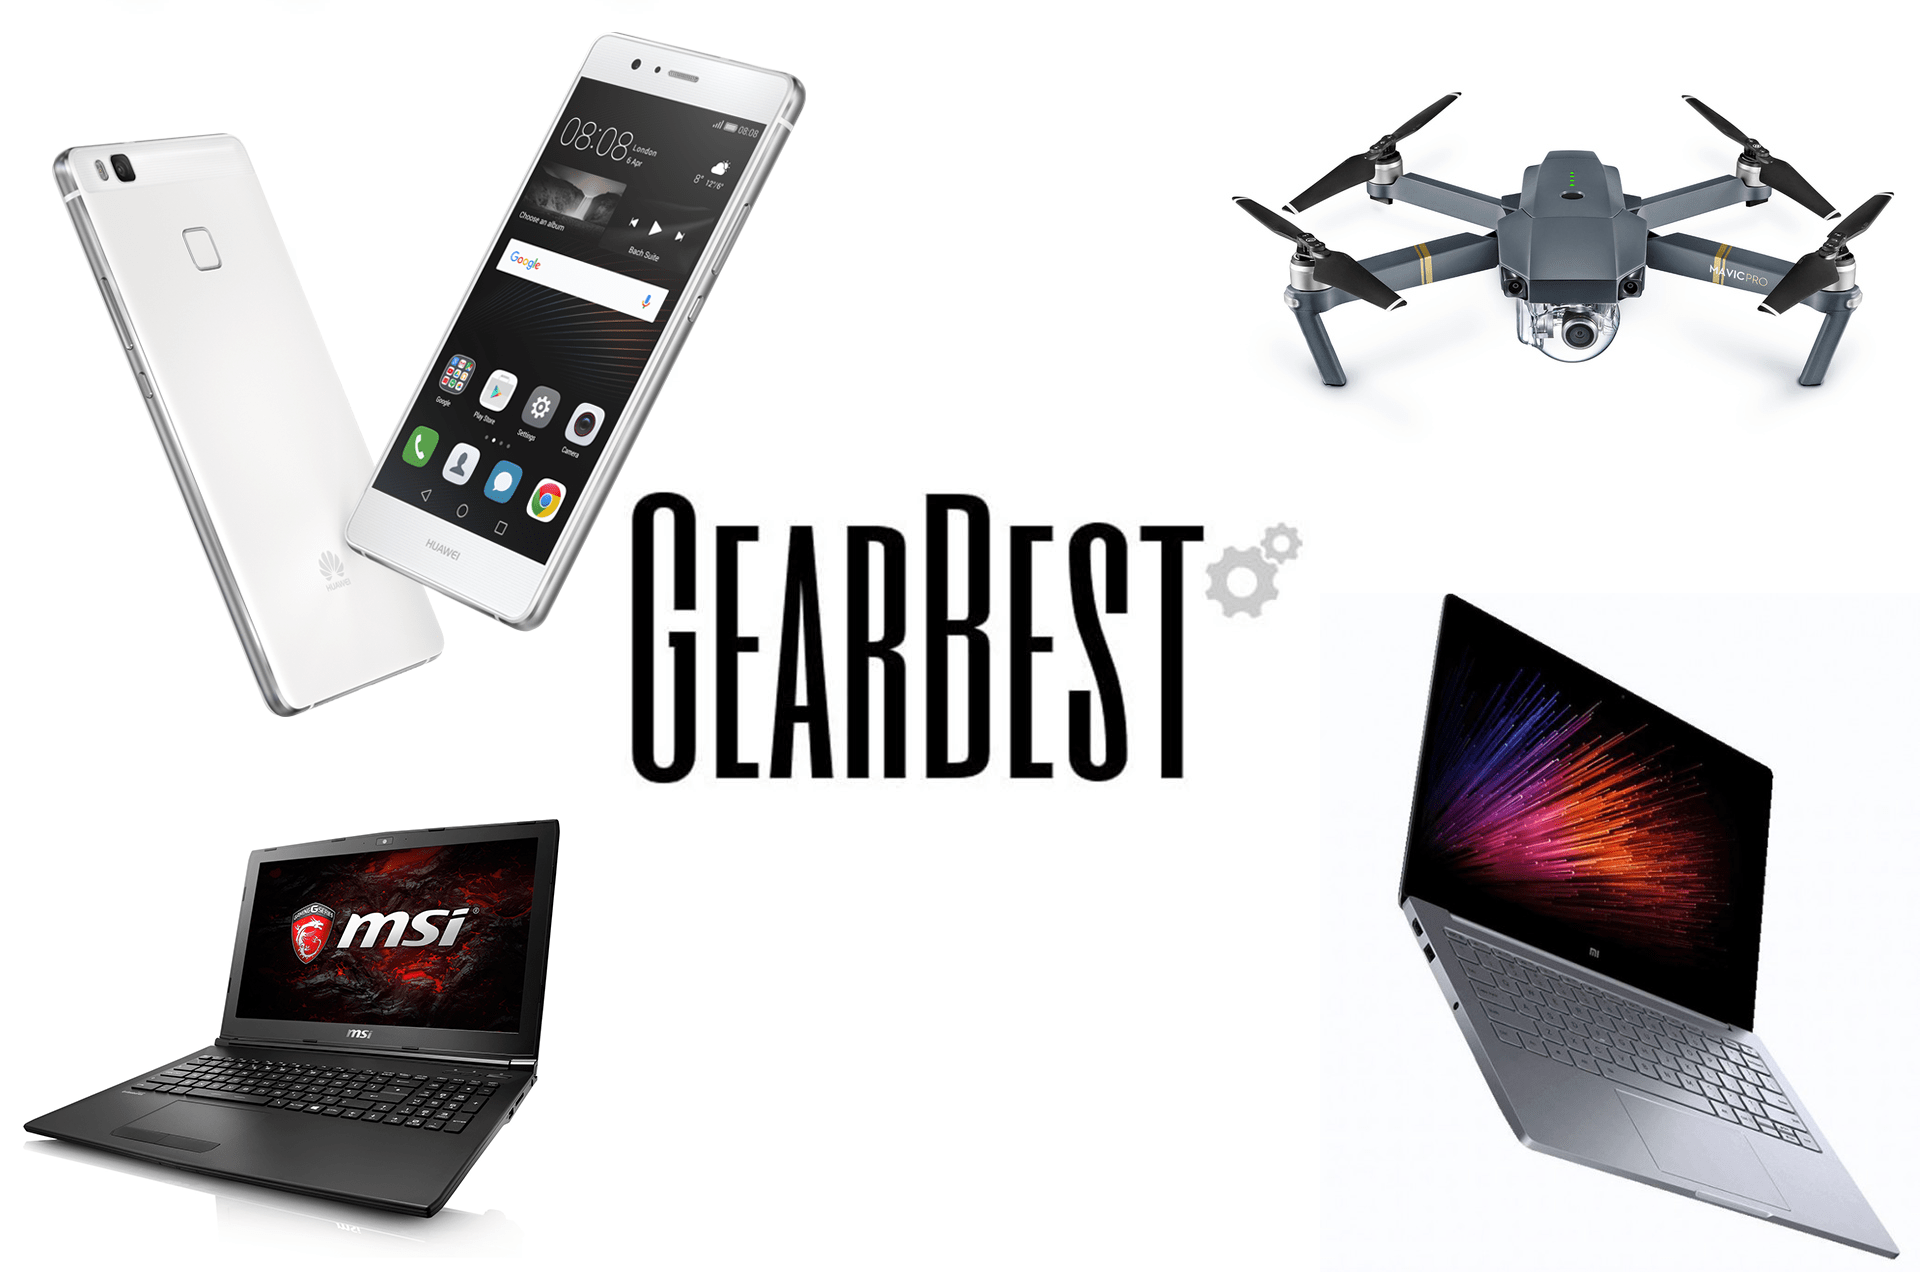 4 offres de la semaine sur GearBest : Xiaomi Air 13, MSI GL62M, DJI Mavic Pro et Huawei P9 Lite